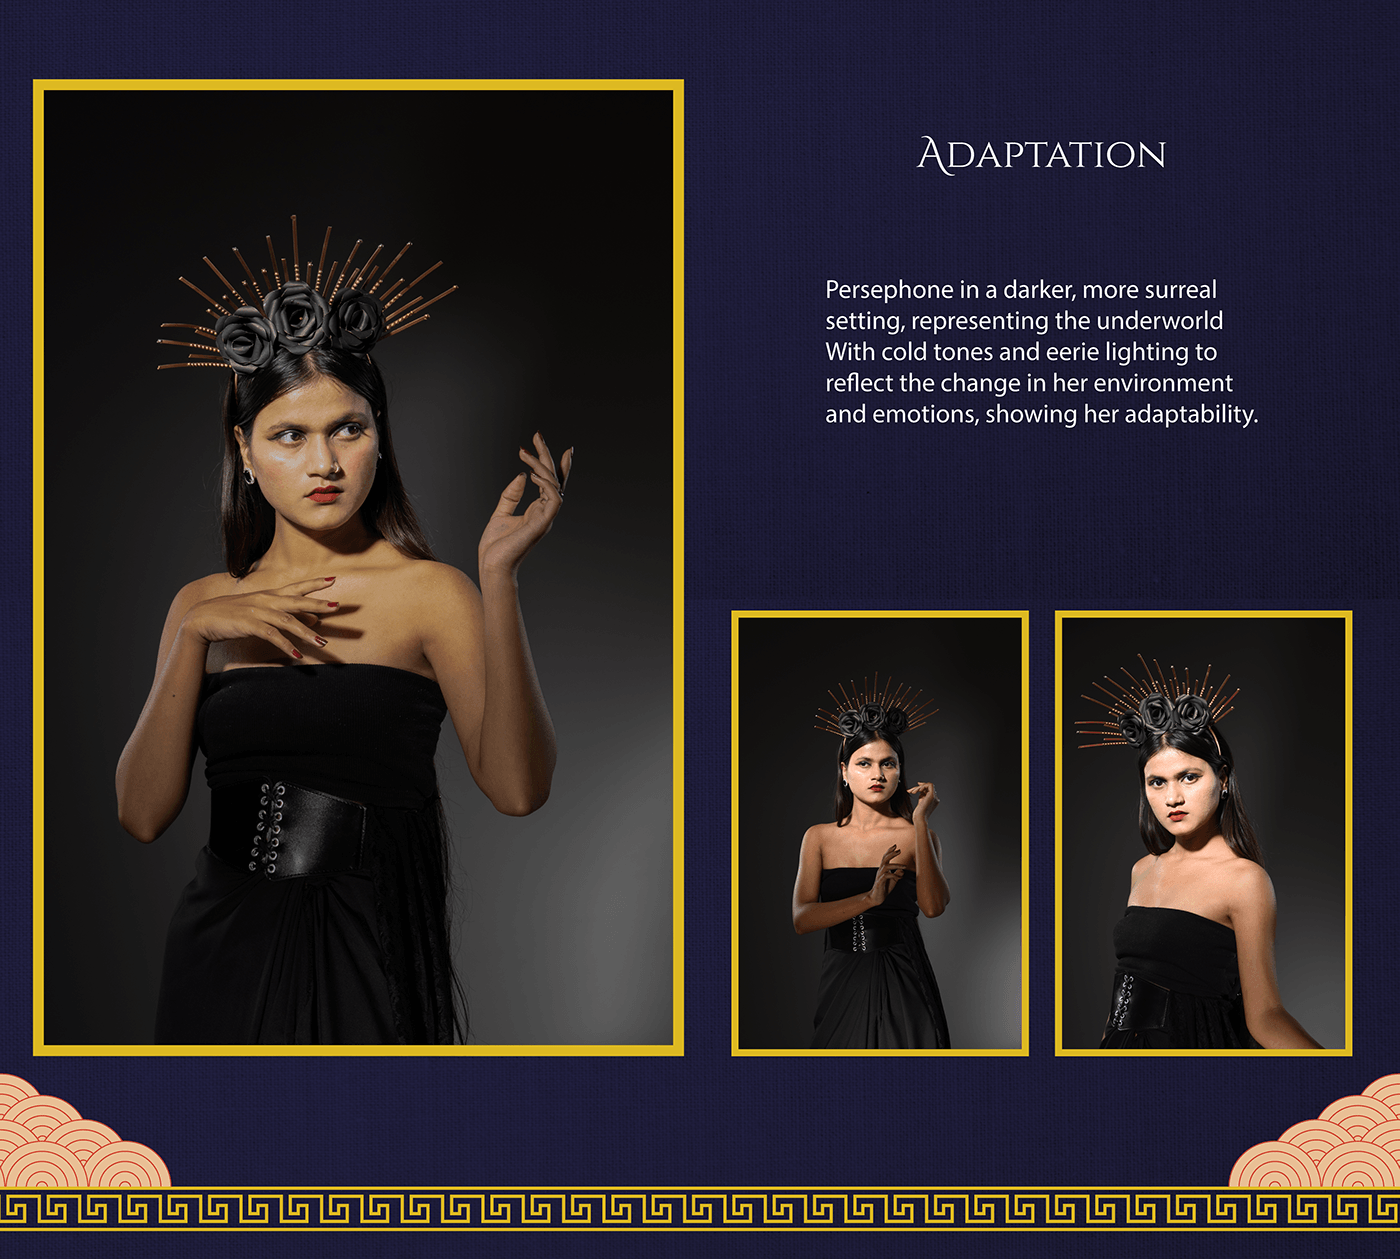 greek greek mythology Persephone hades mythology goddess Photography  photo story portrait photostory